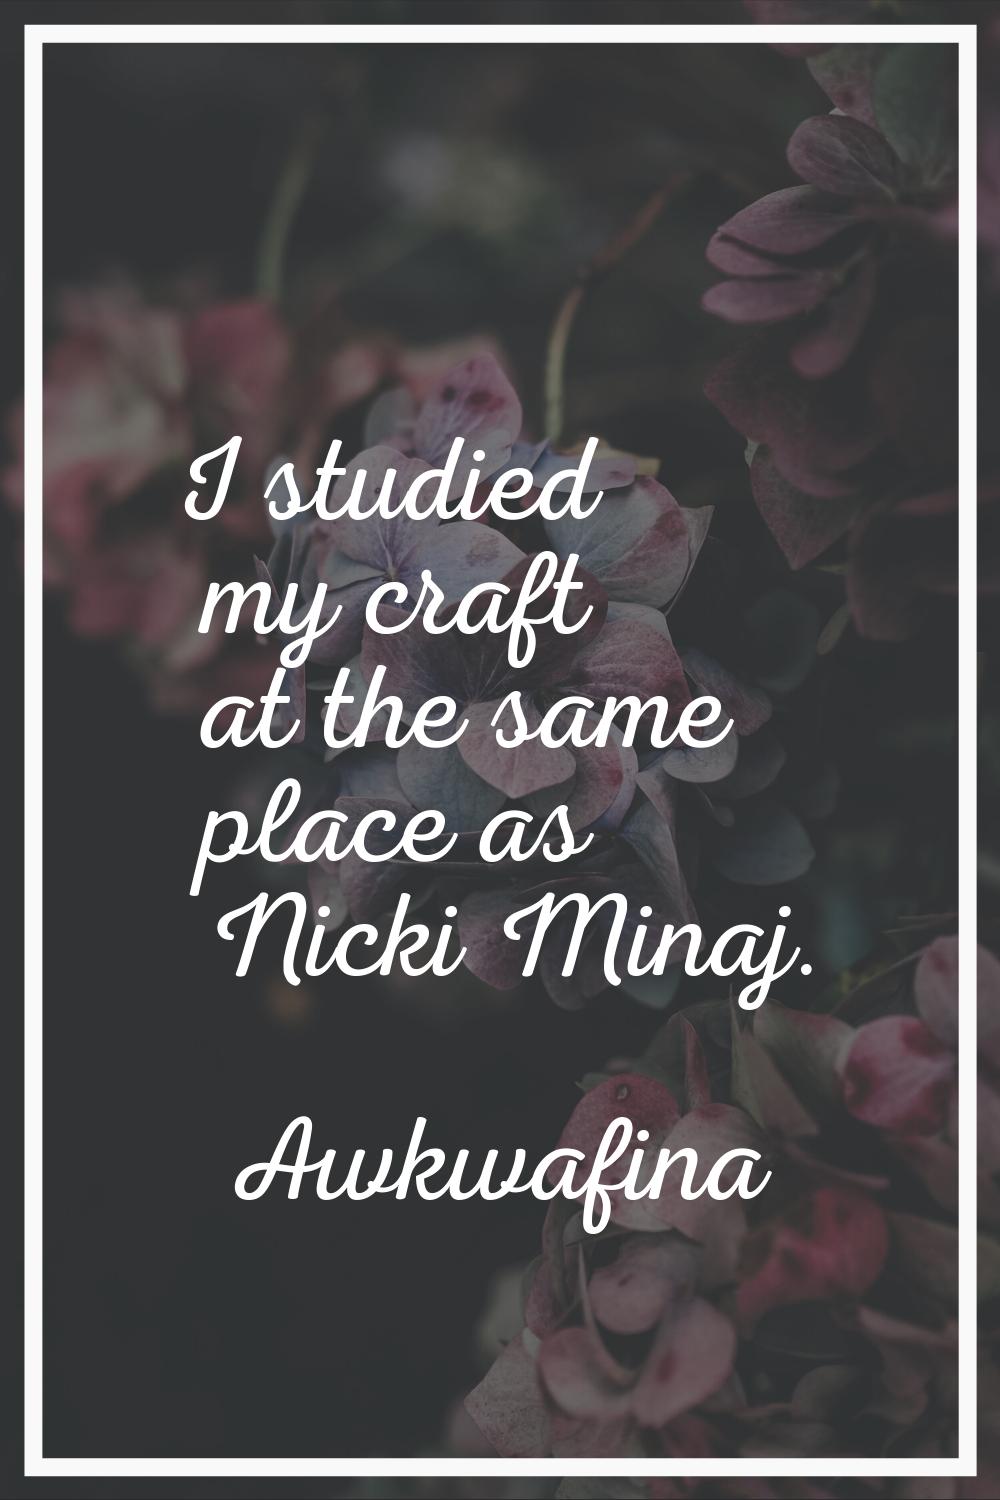 I studied my craft at the same place as Nicki Minaj.